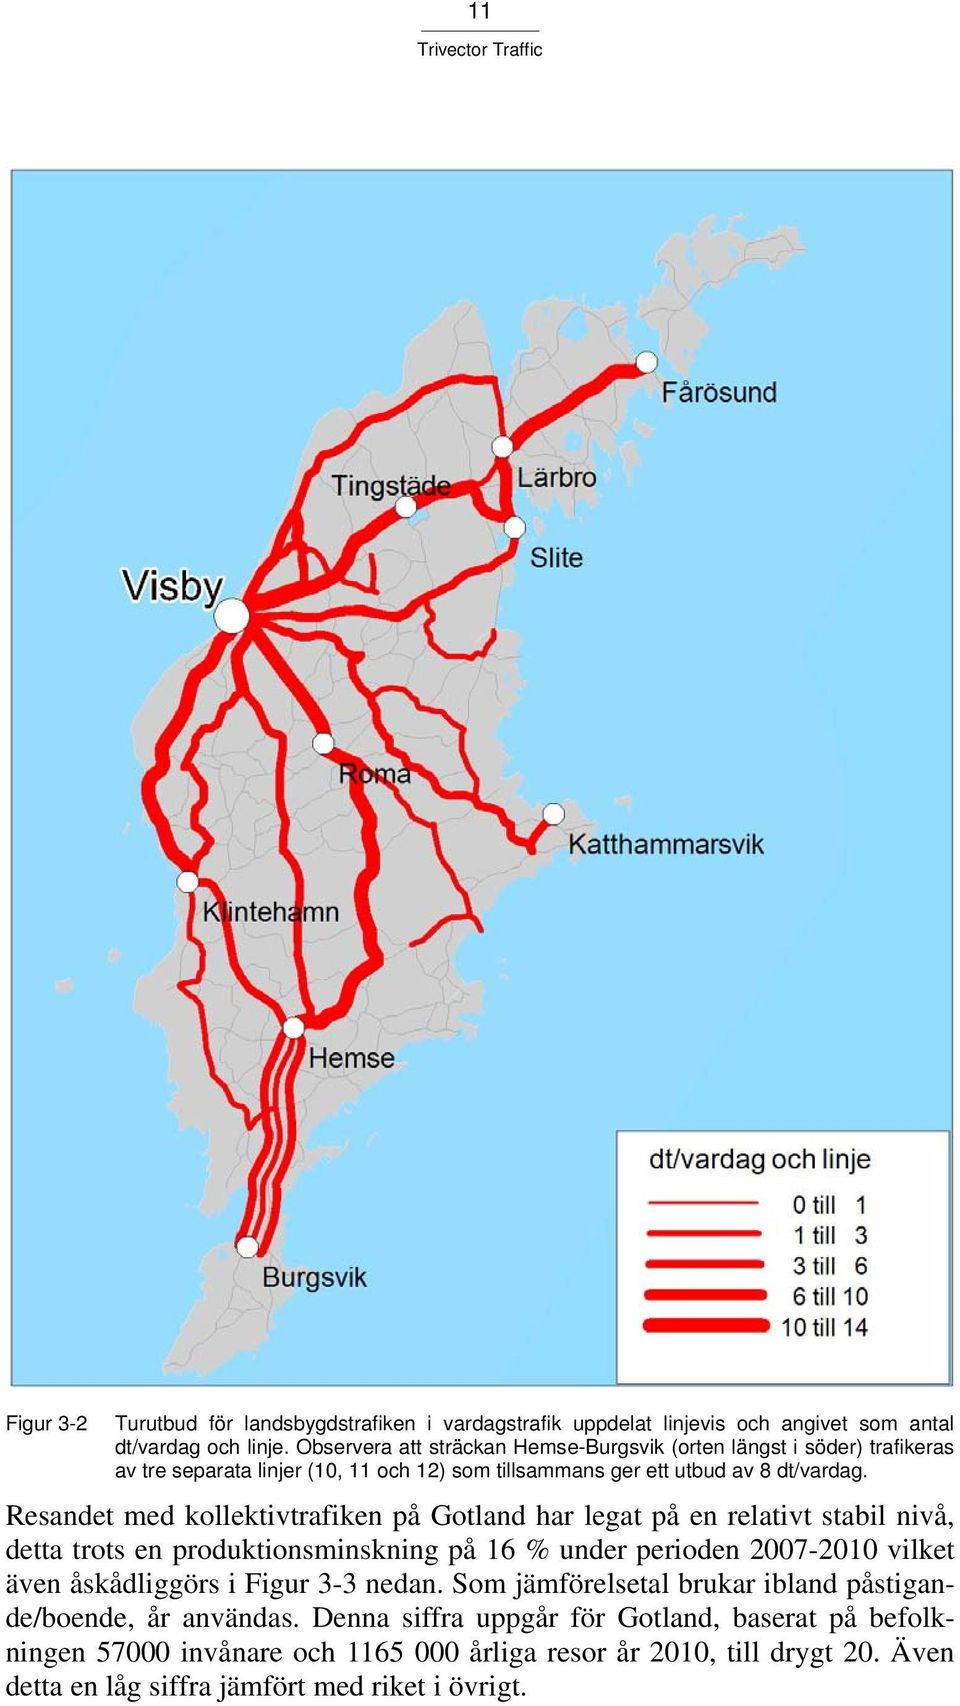 Resandet med kollektivtrafiken på Gotland har legat på en relativt stabil nivå, detta trots en produktionsminskning på 16 % under perioden 2007-2010 vilket även åskådliggörs i